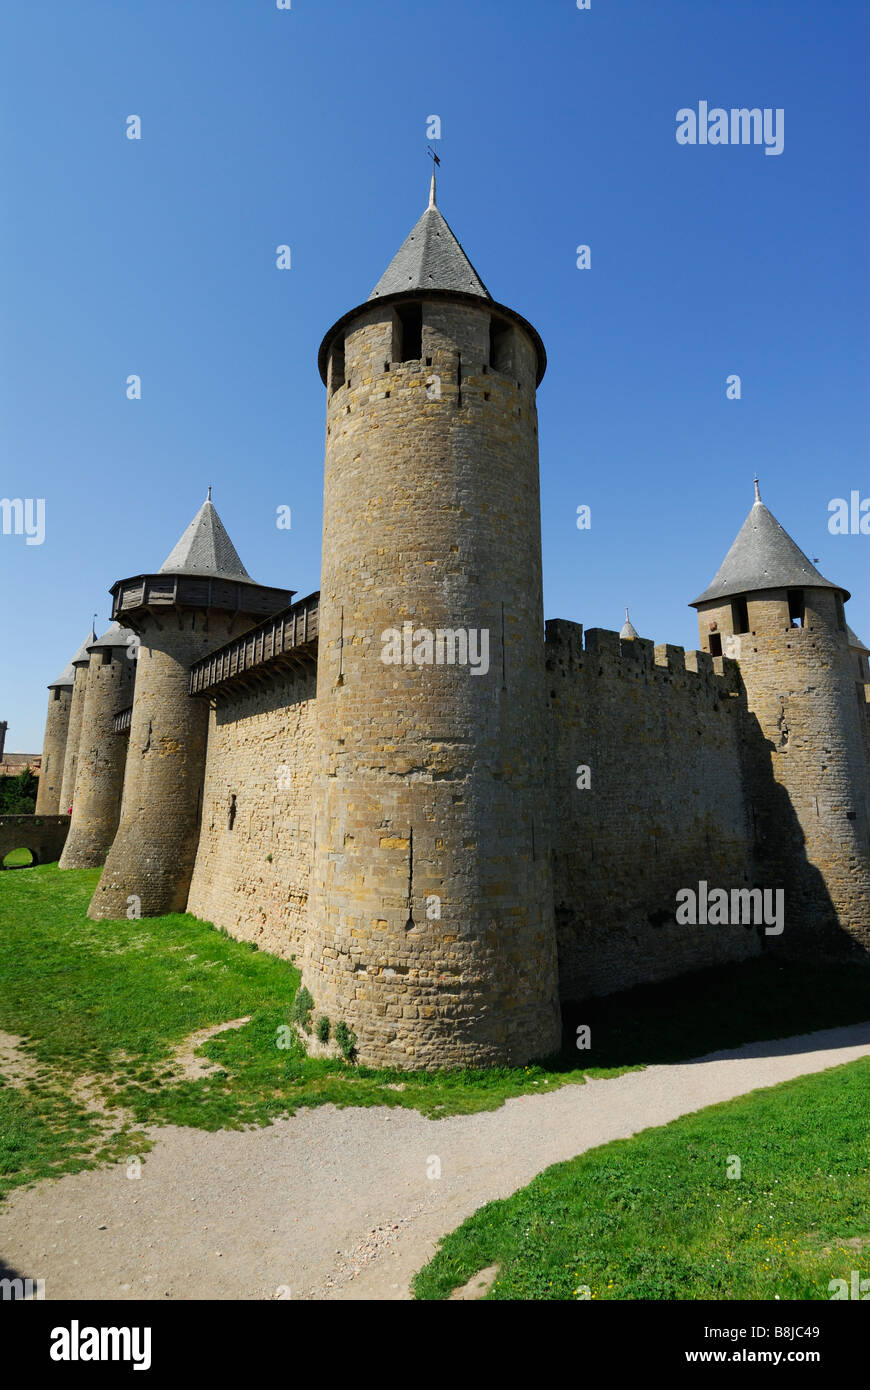 La cité médiévale de Carcassonne France Banque D'Images